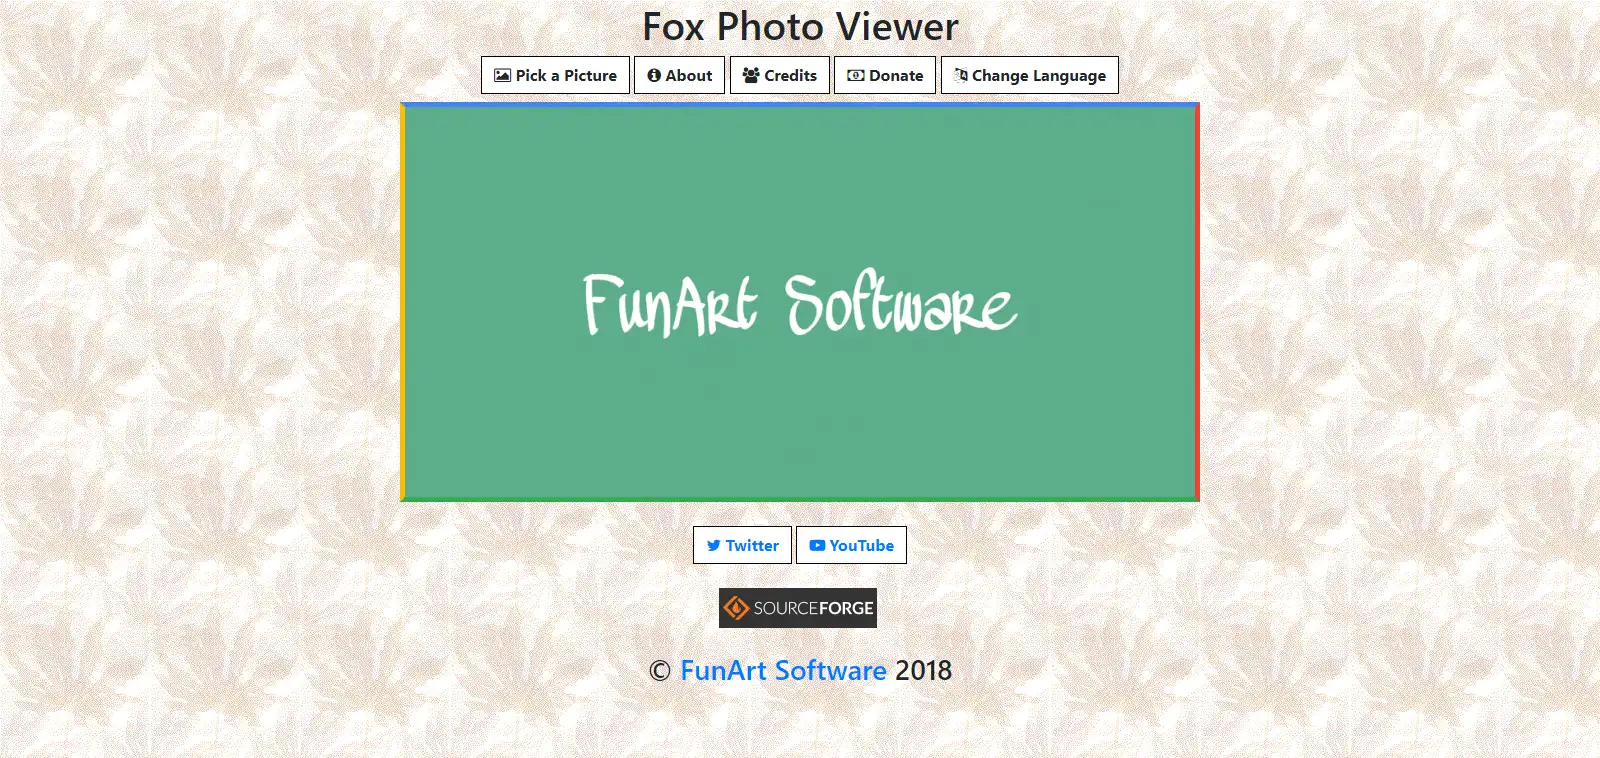 ابزار وب یا برنامه وب Fox Photo Viewer را دانلود کنید